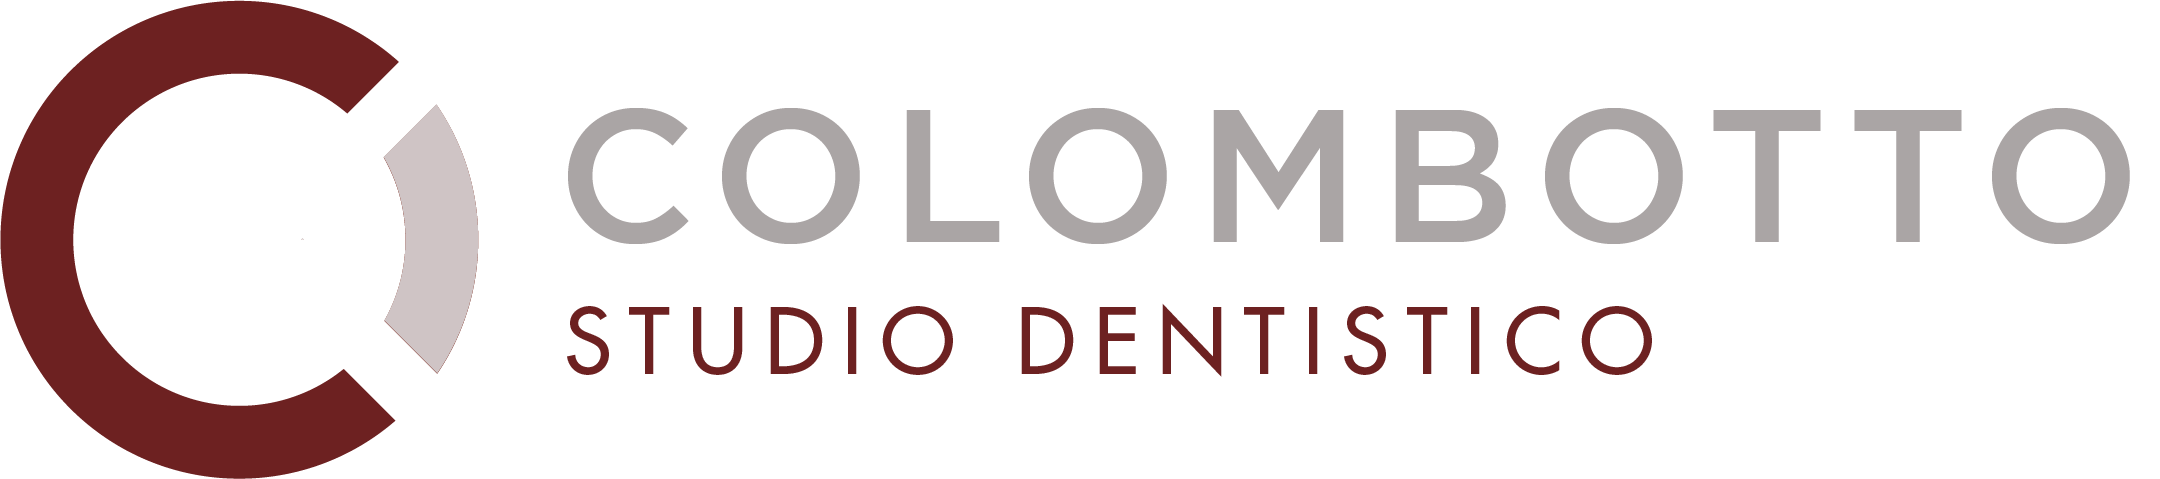 Studio Dentistico Colombotto | Logo